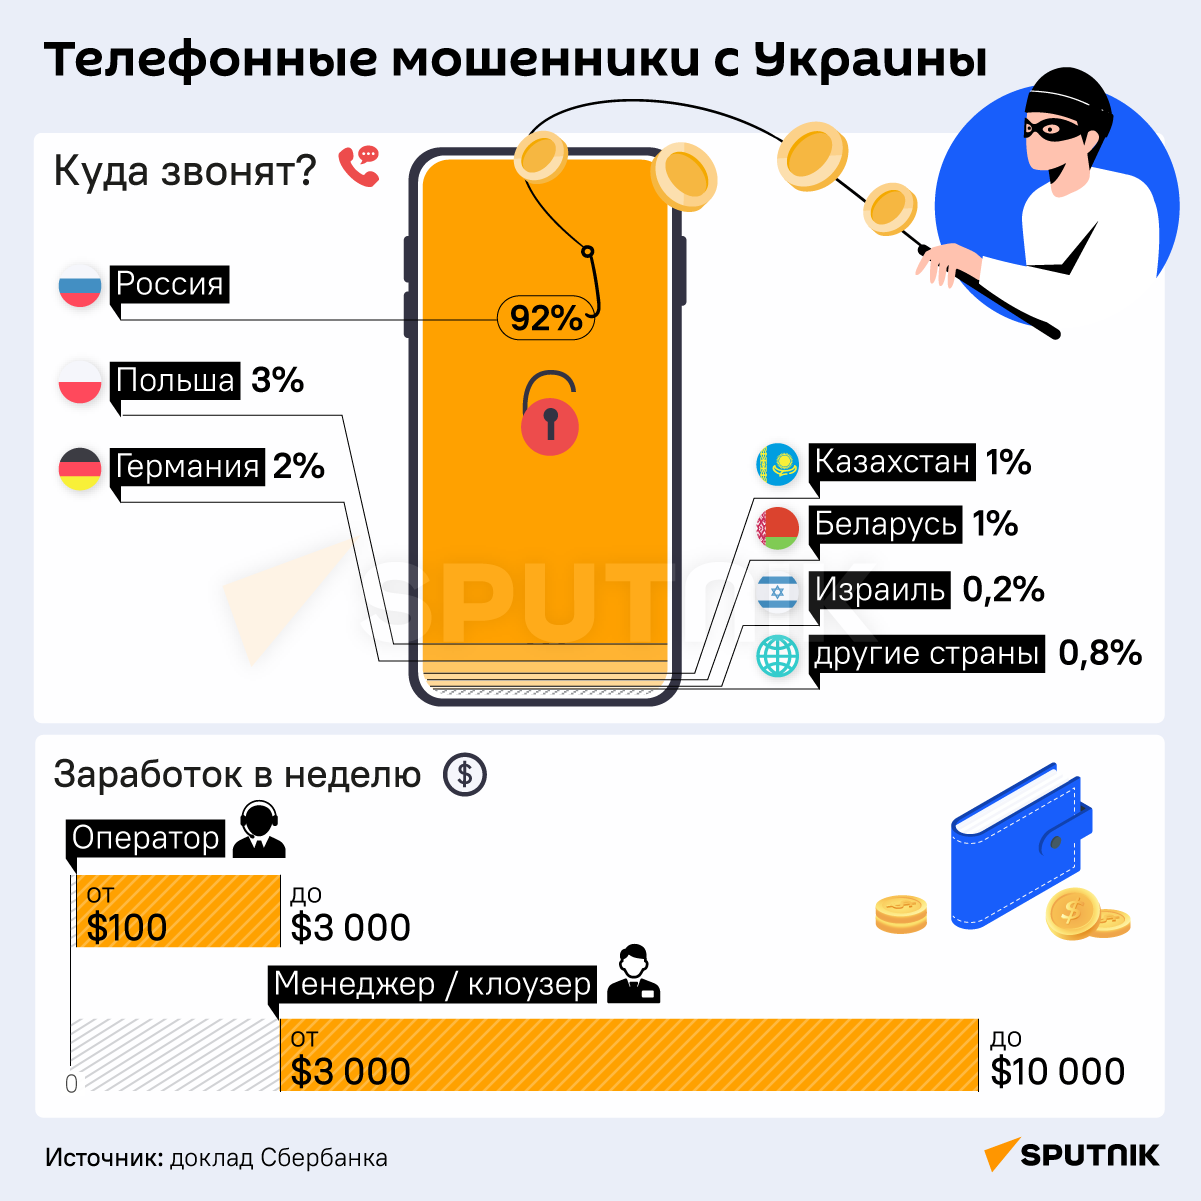 Телефонные мошенники с Украины - инфографика - Sputnik Беларусь